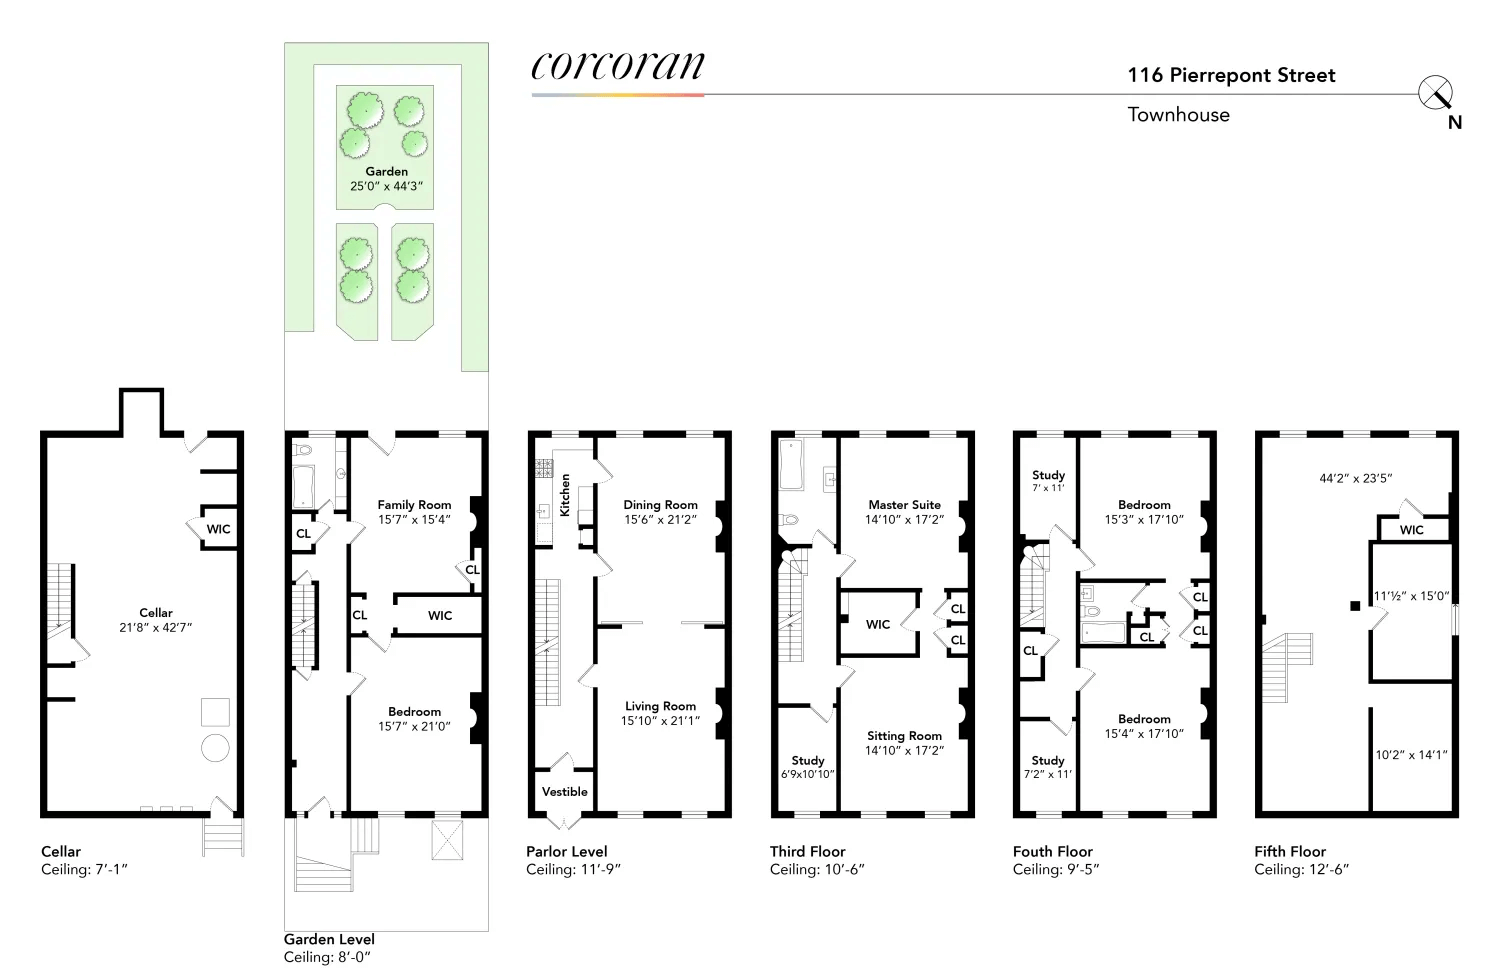 floor plan showing five floors of living space plus cellar